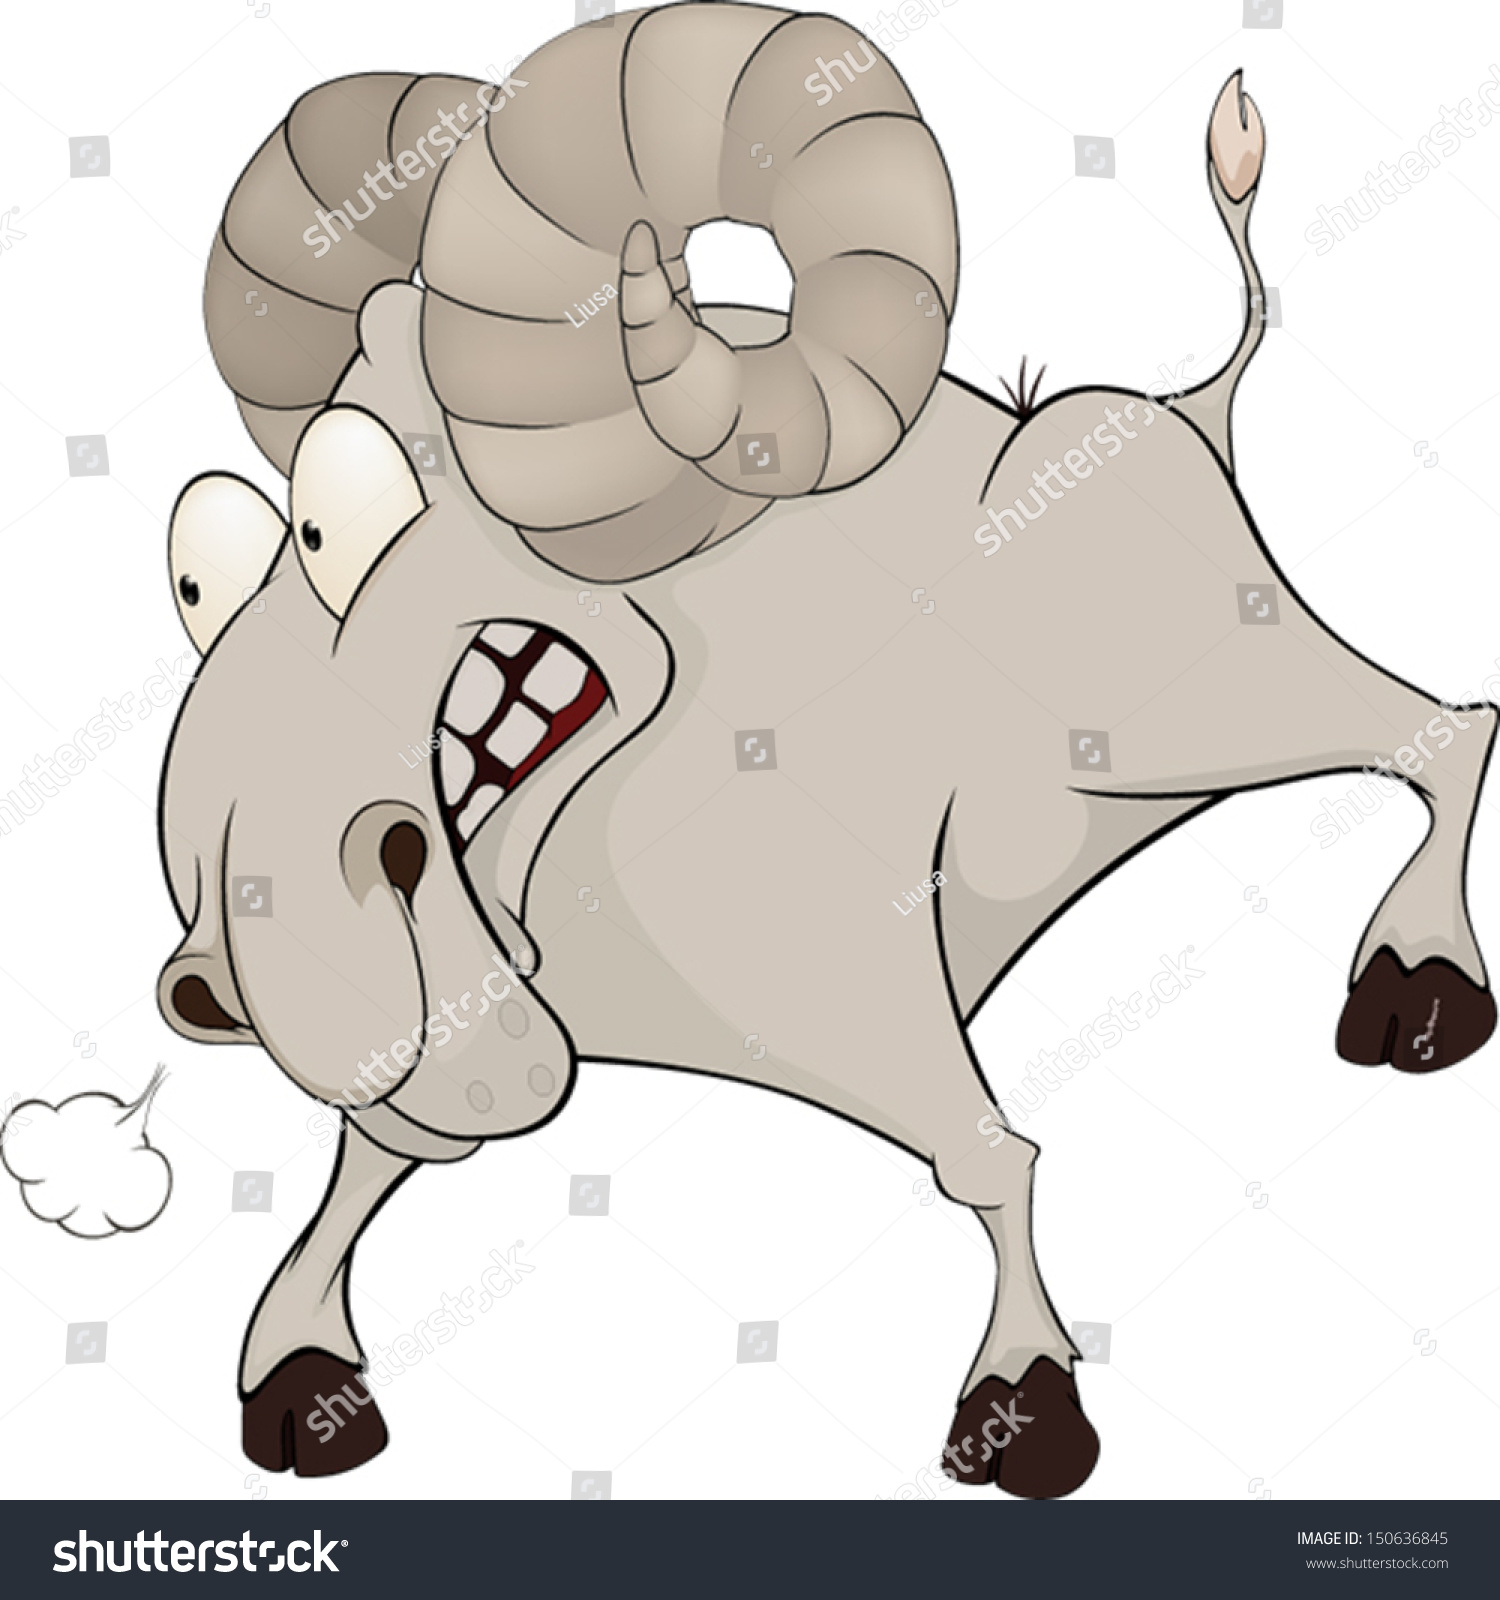 Ram. Cartoon Stock Vector Illustration 150636845 : Shutterstock